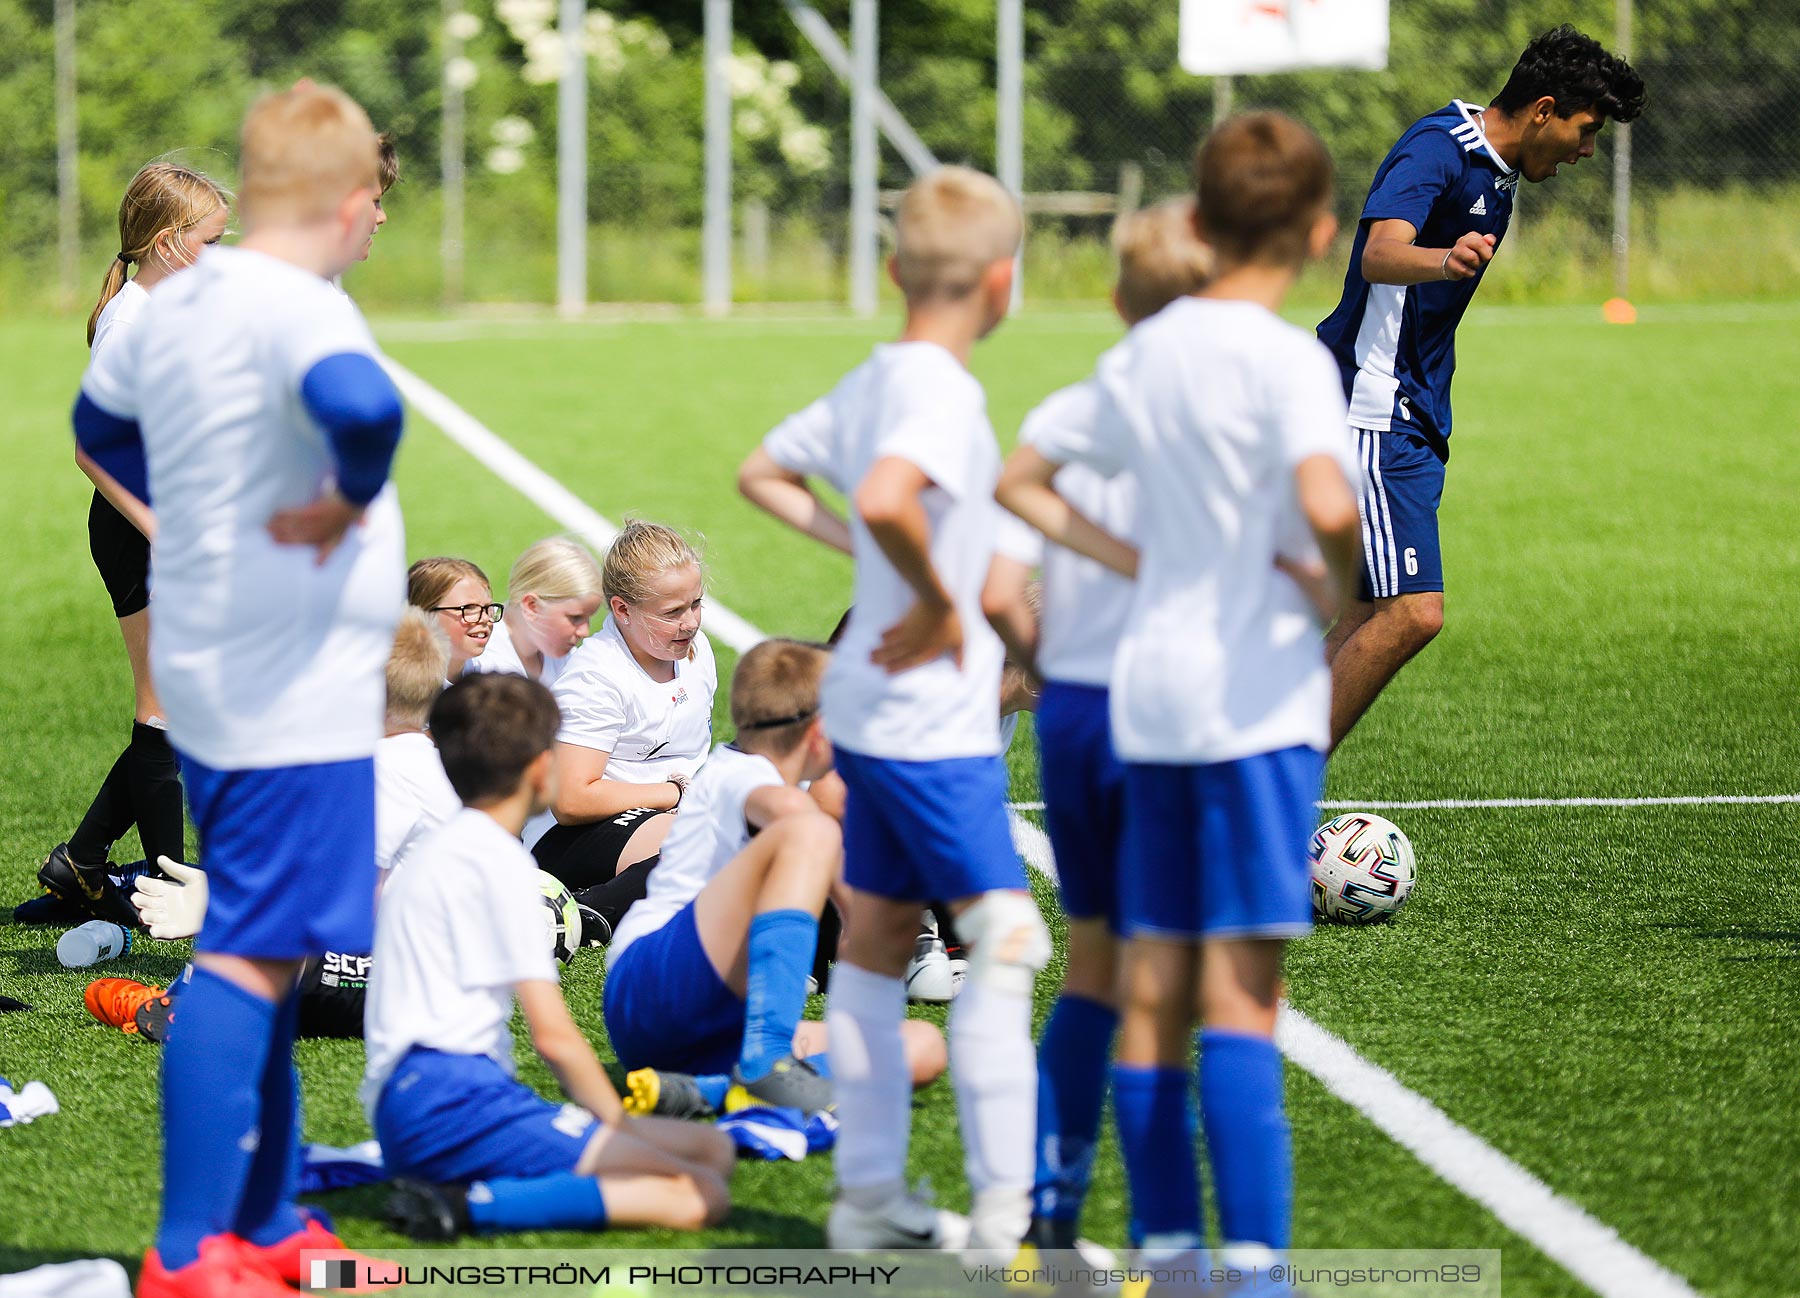 IFK Skövde FK & Skövde KIK Summercamp 2,mix,Lillegårdens IP,Skövde,Sverige,Fotboll,,2020,237055